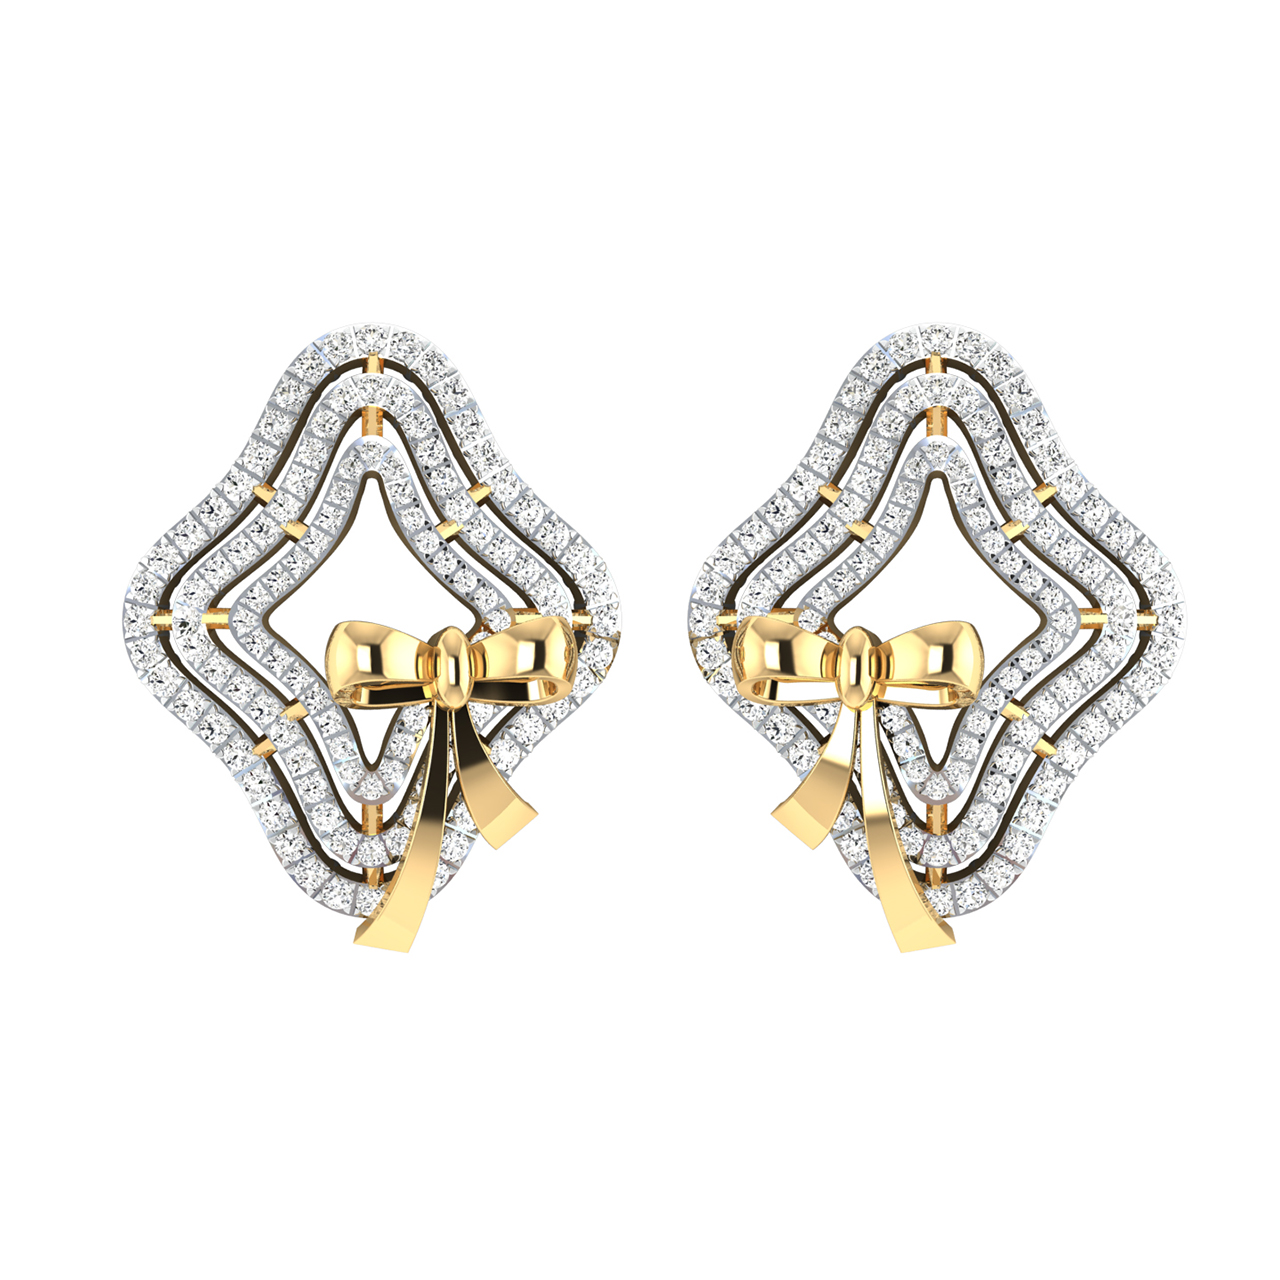 Lucie Star Diamond Stud Earrings For Her